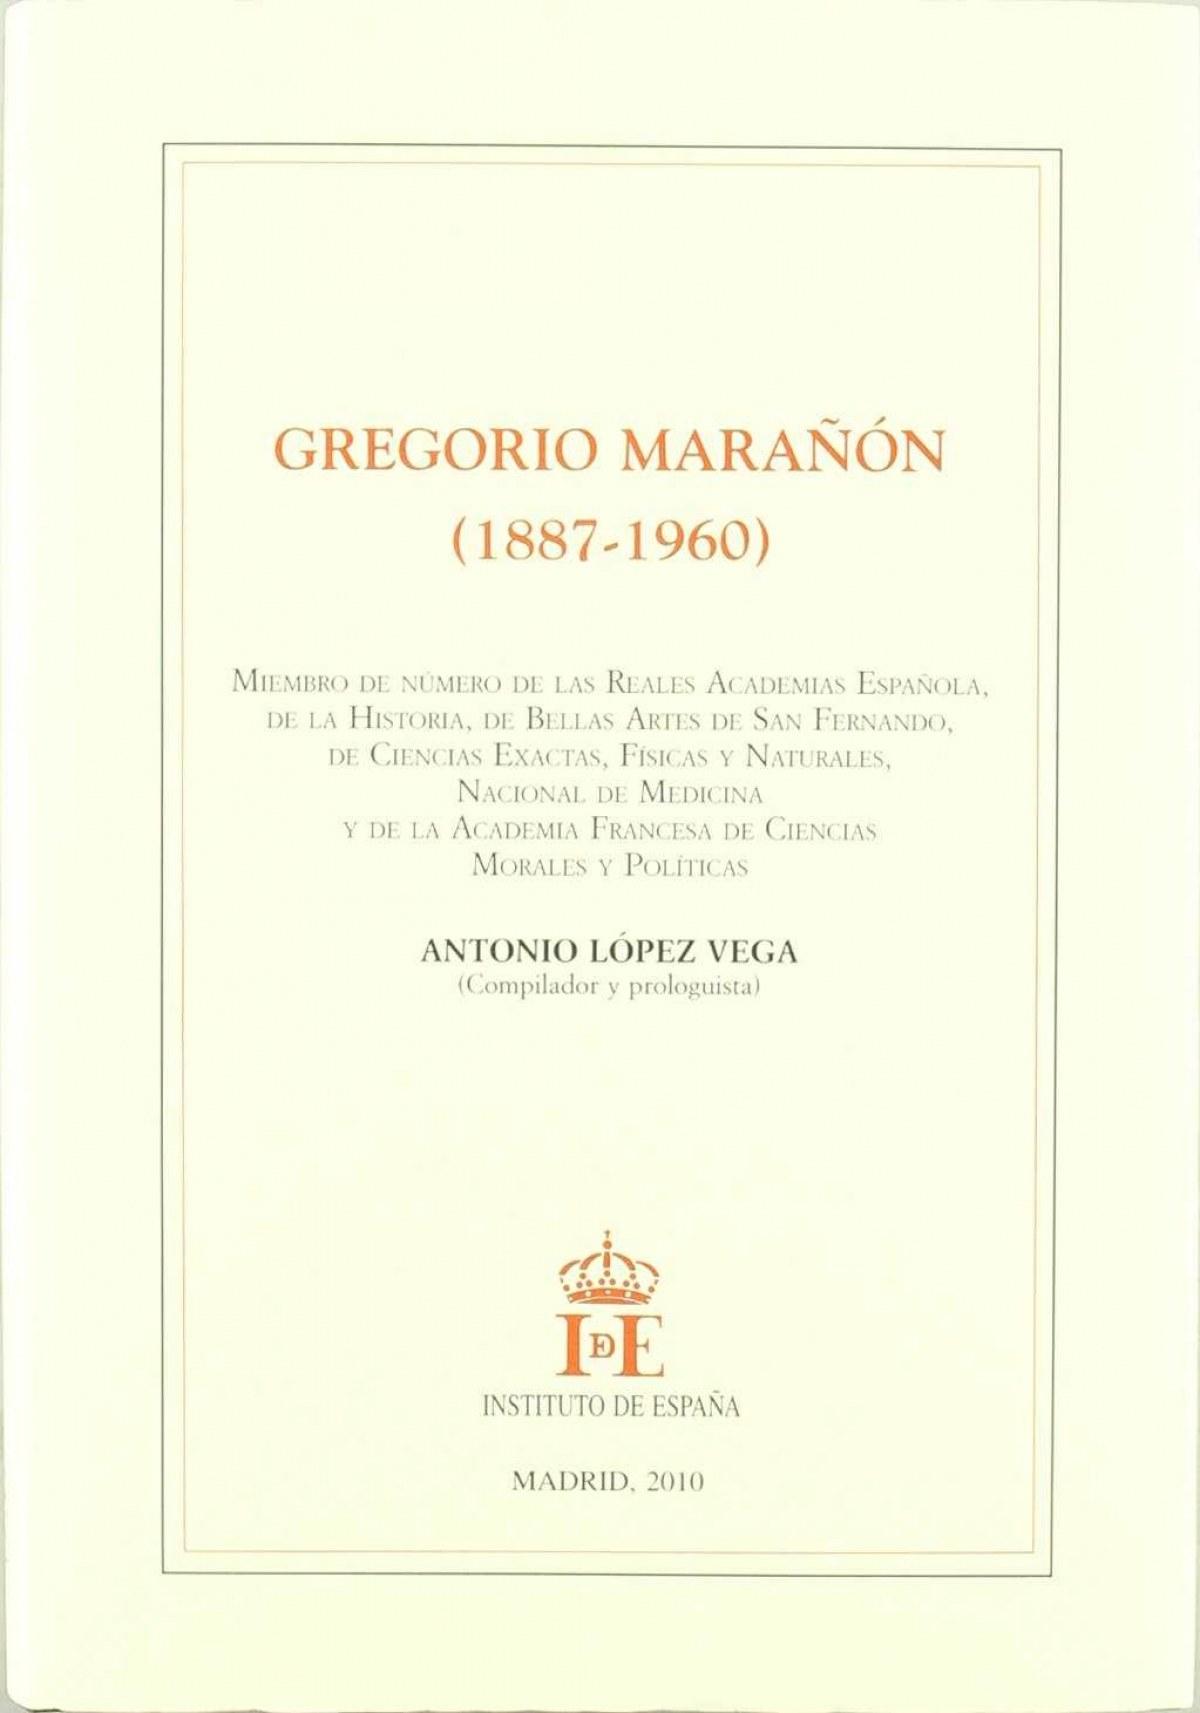 Gregorio Marañón (1887-1960)